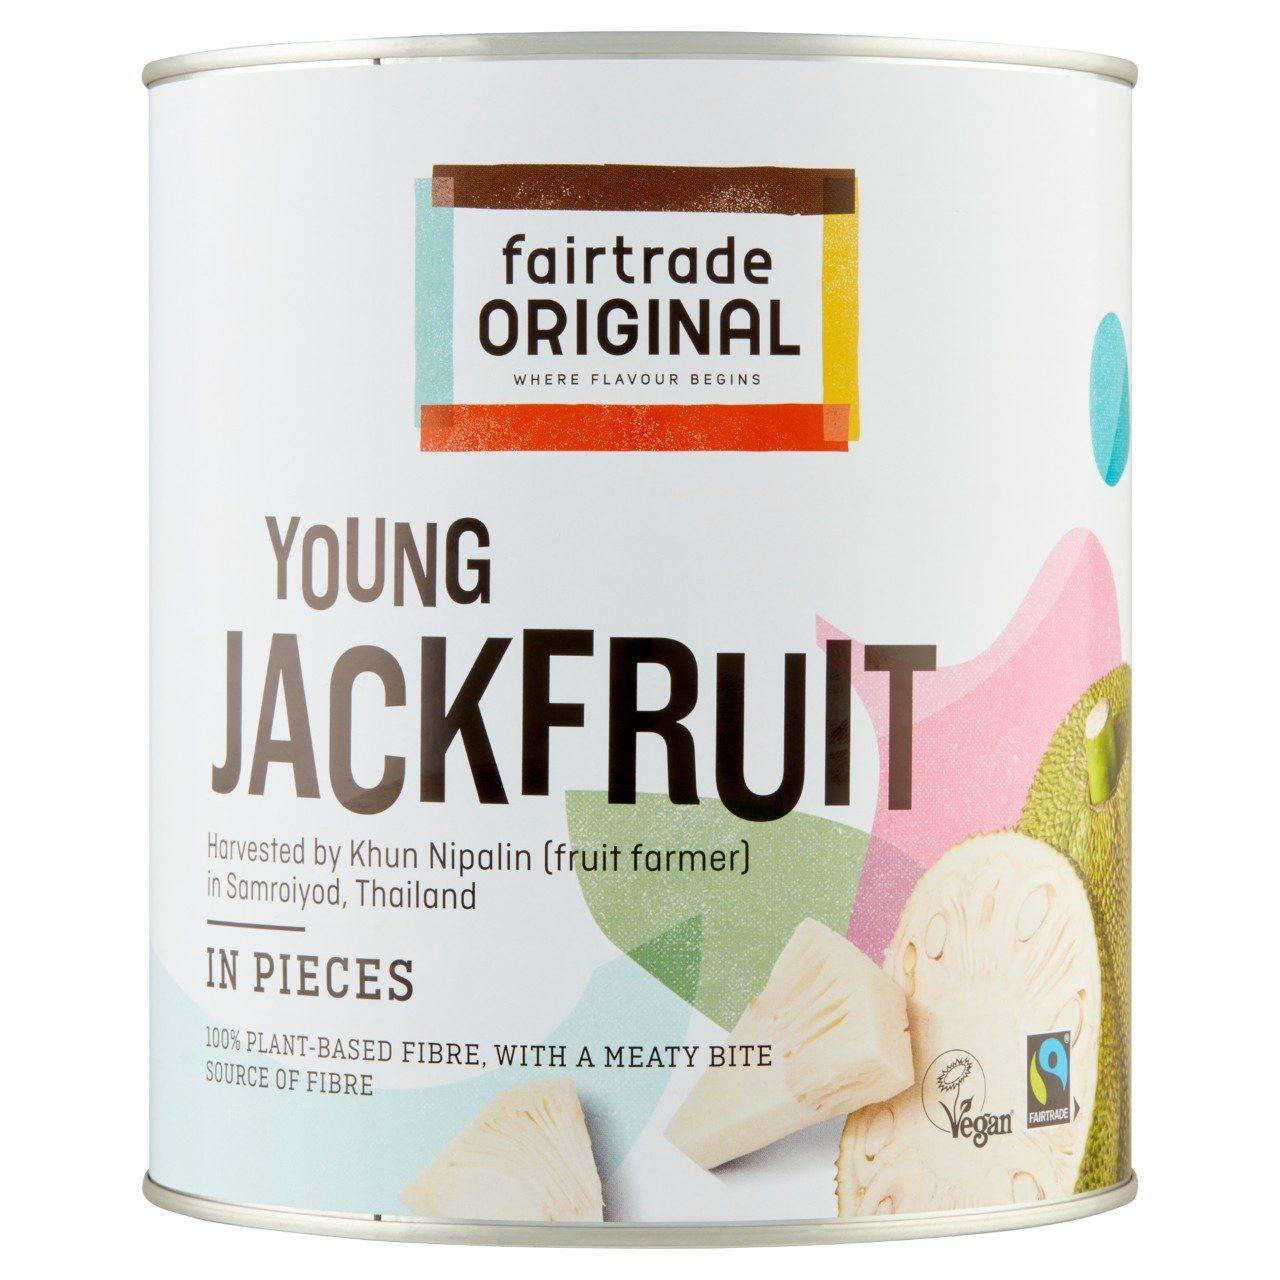 Young jackfruit